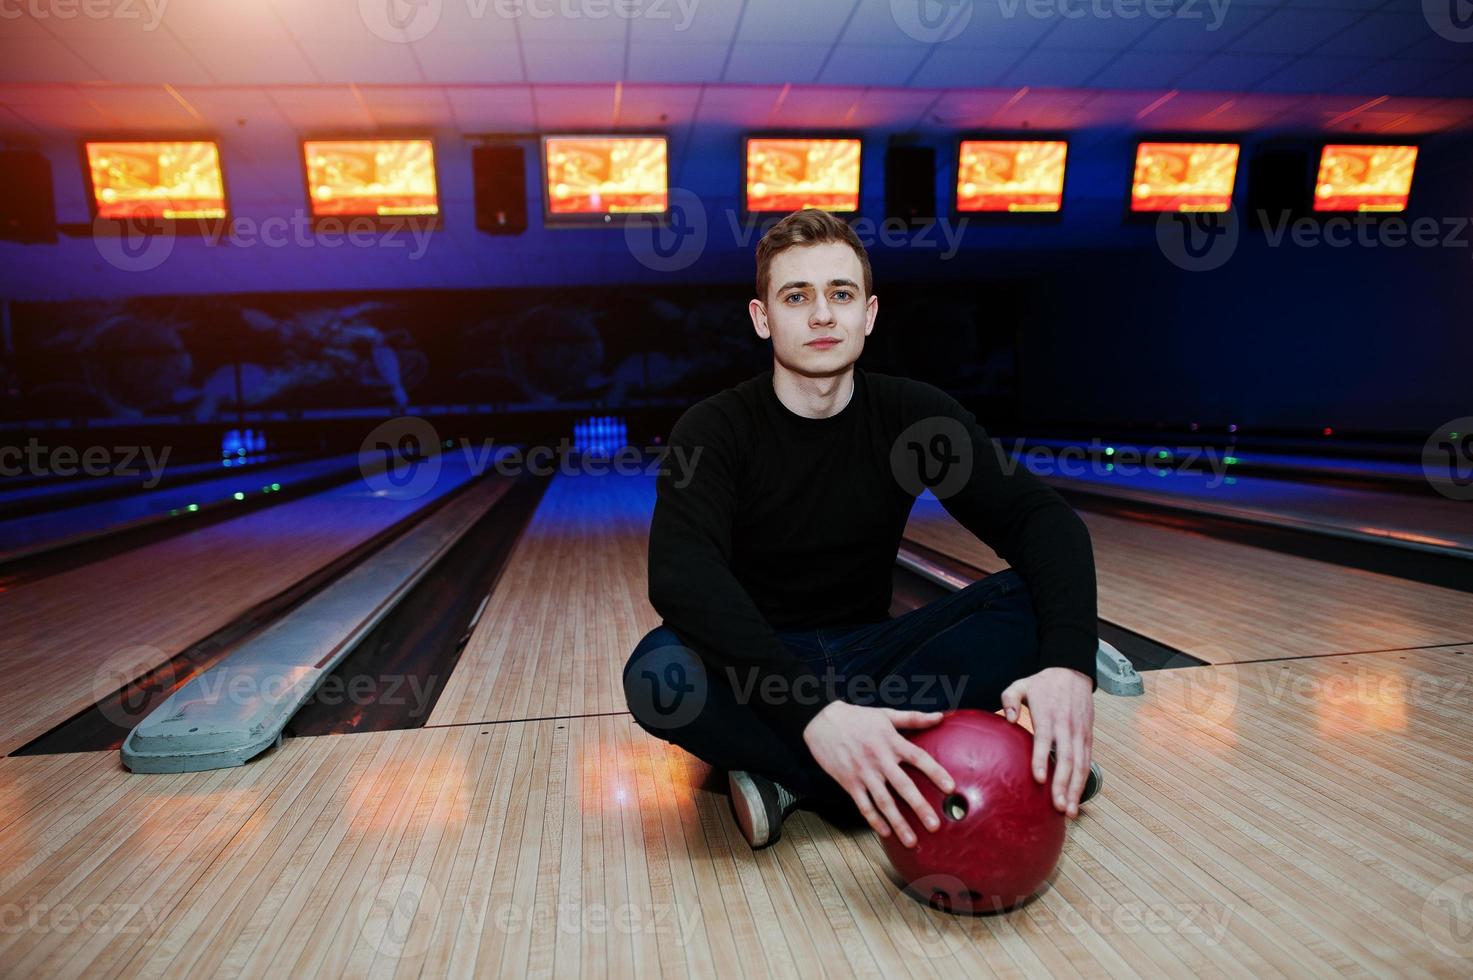 jonge man met een bowlingbal zittend tegen bowlingbanen met ultraviolet licht. foto